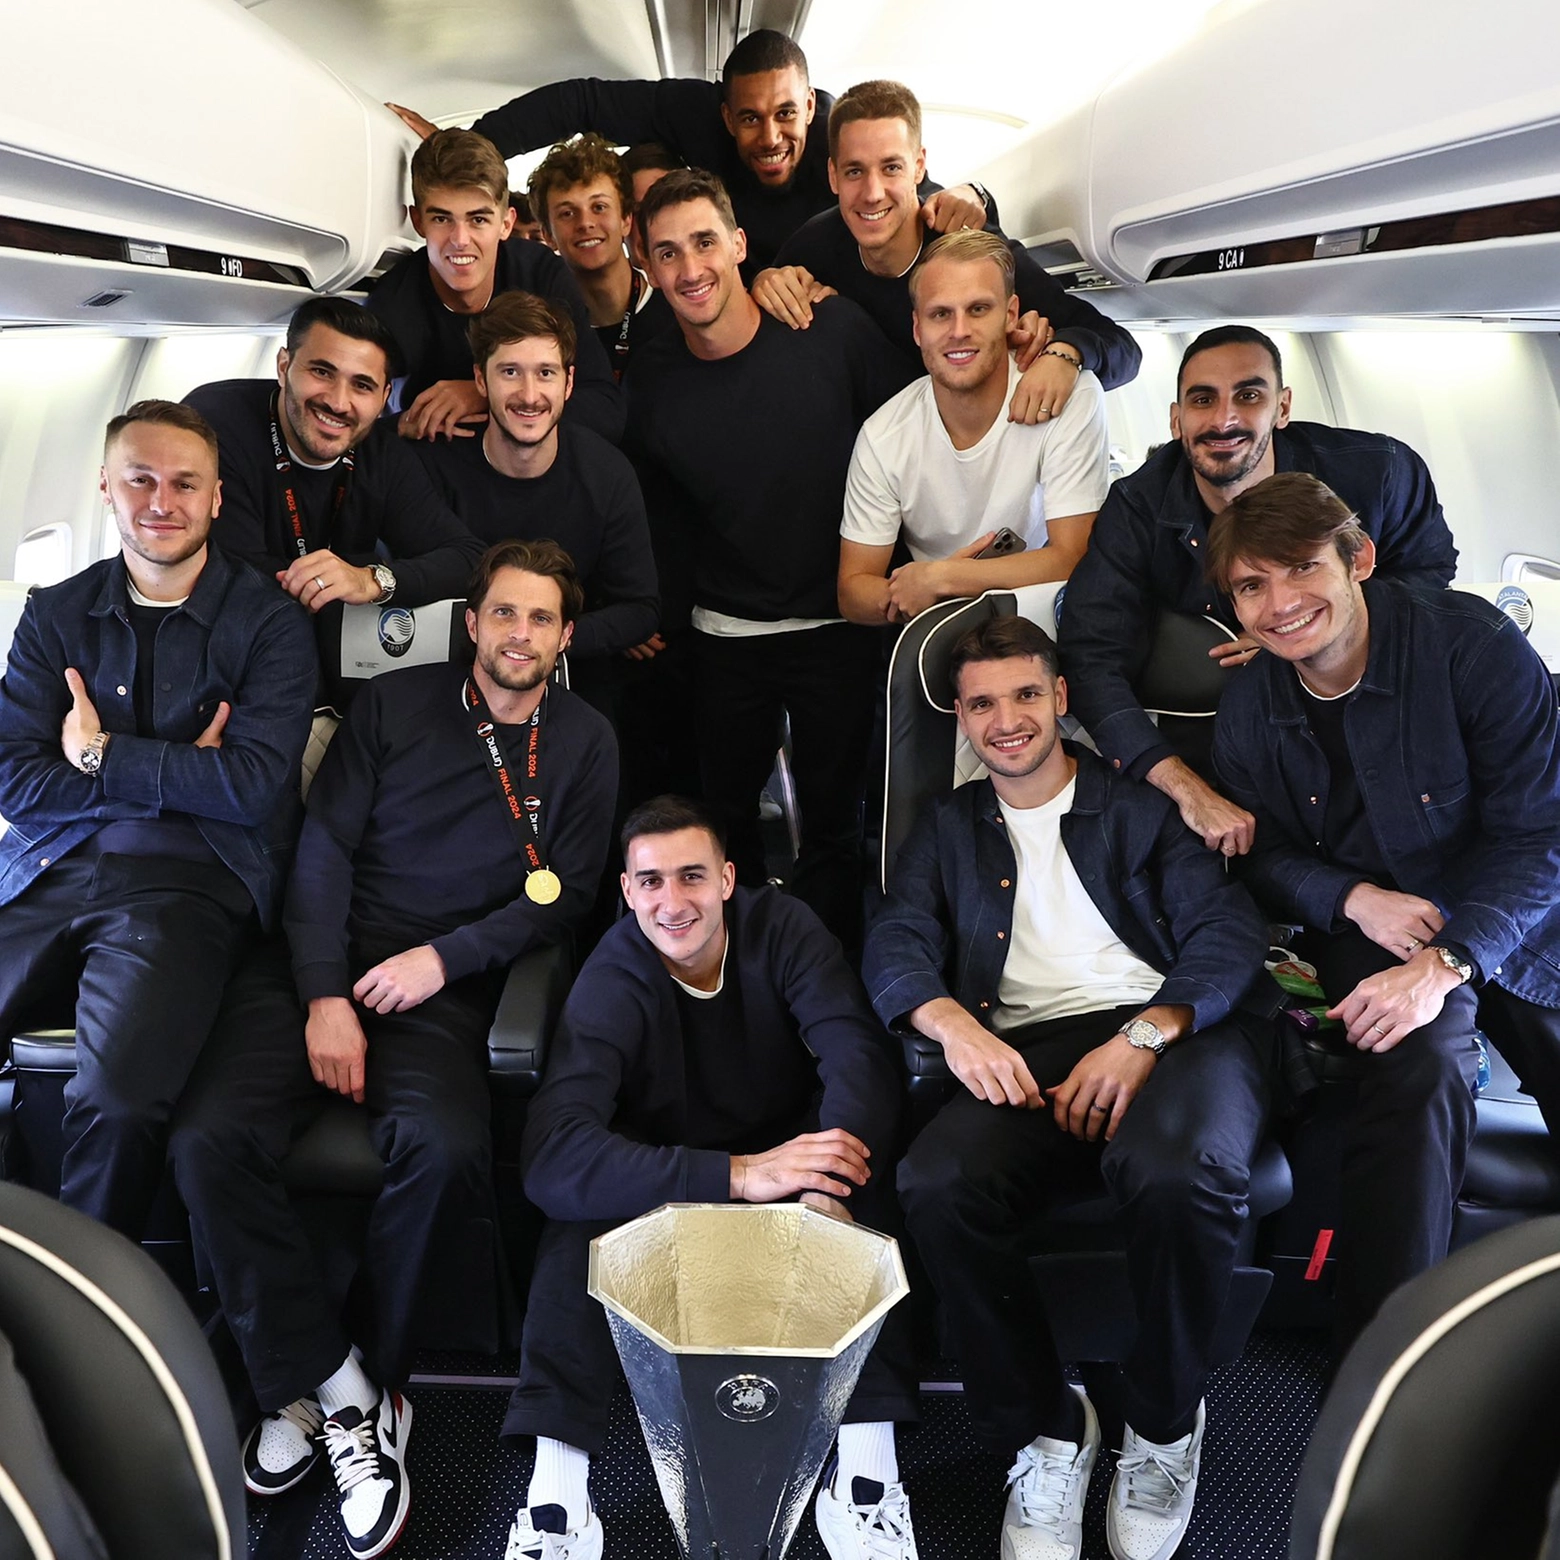 I calciatori dell'Atalanta sul volo di ritorno per Bergamo con la coppa